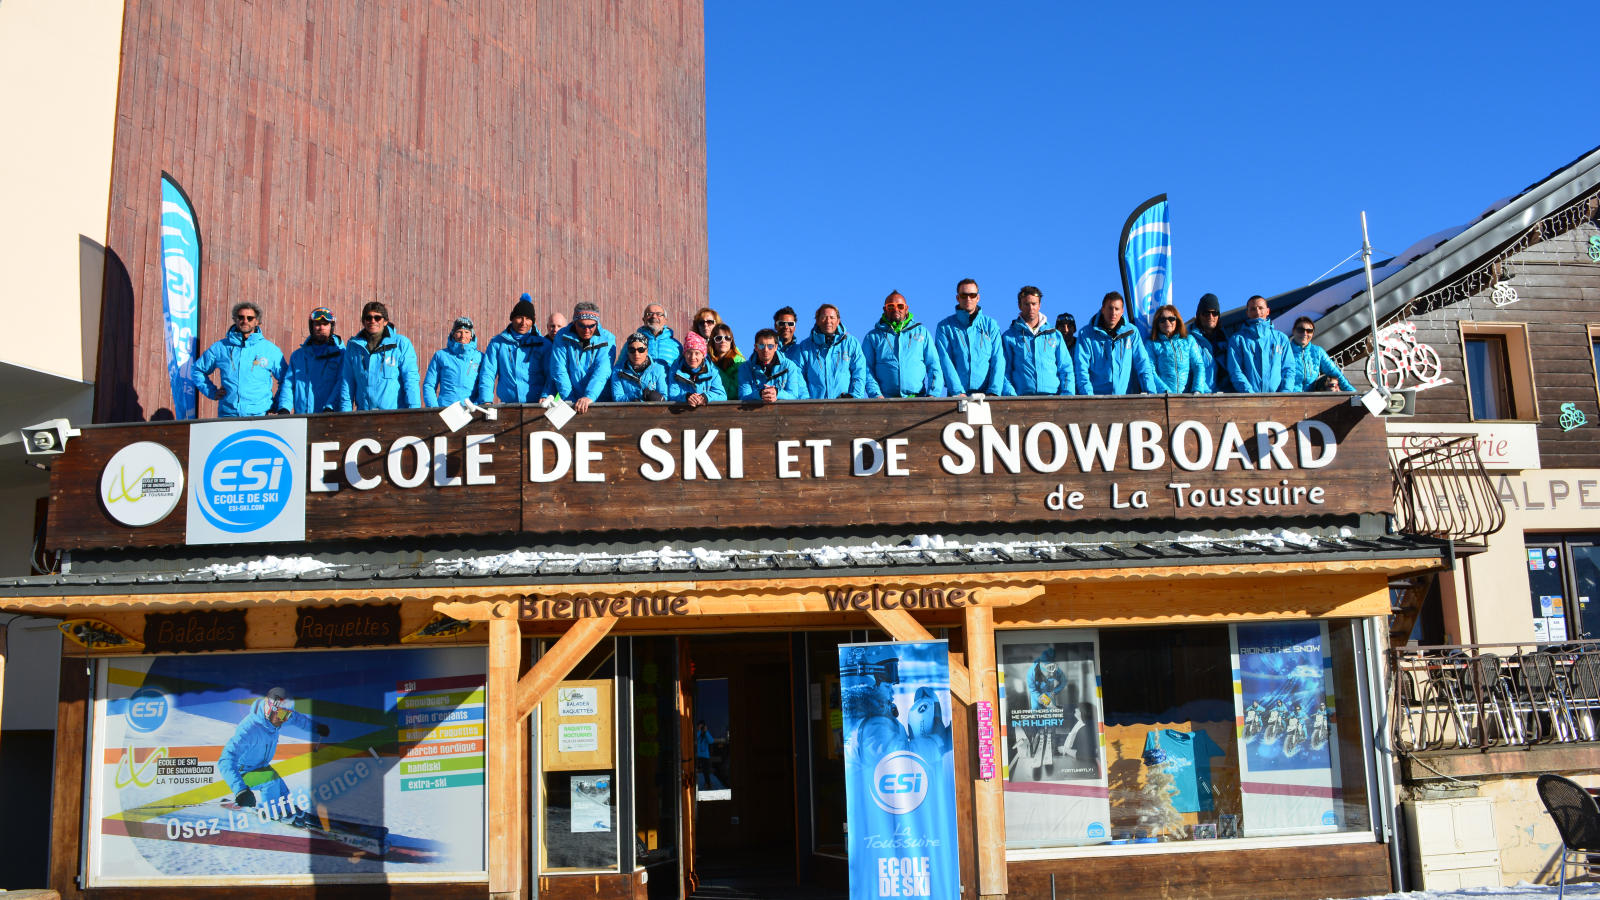 ESI- International Ski School